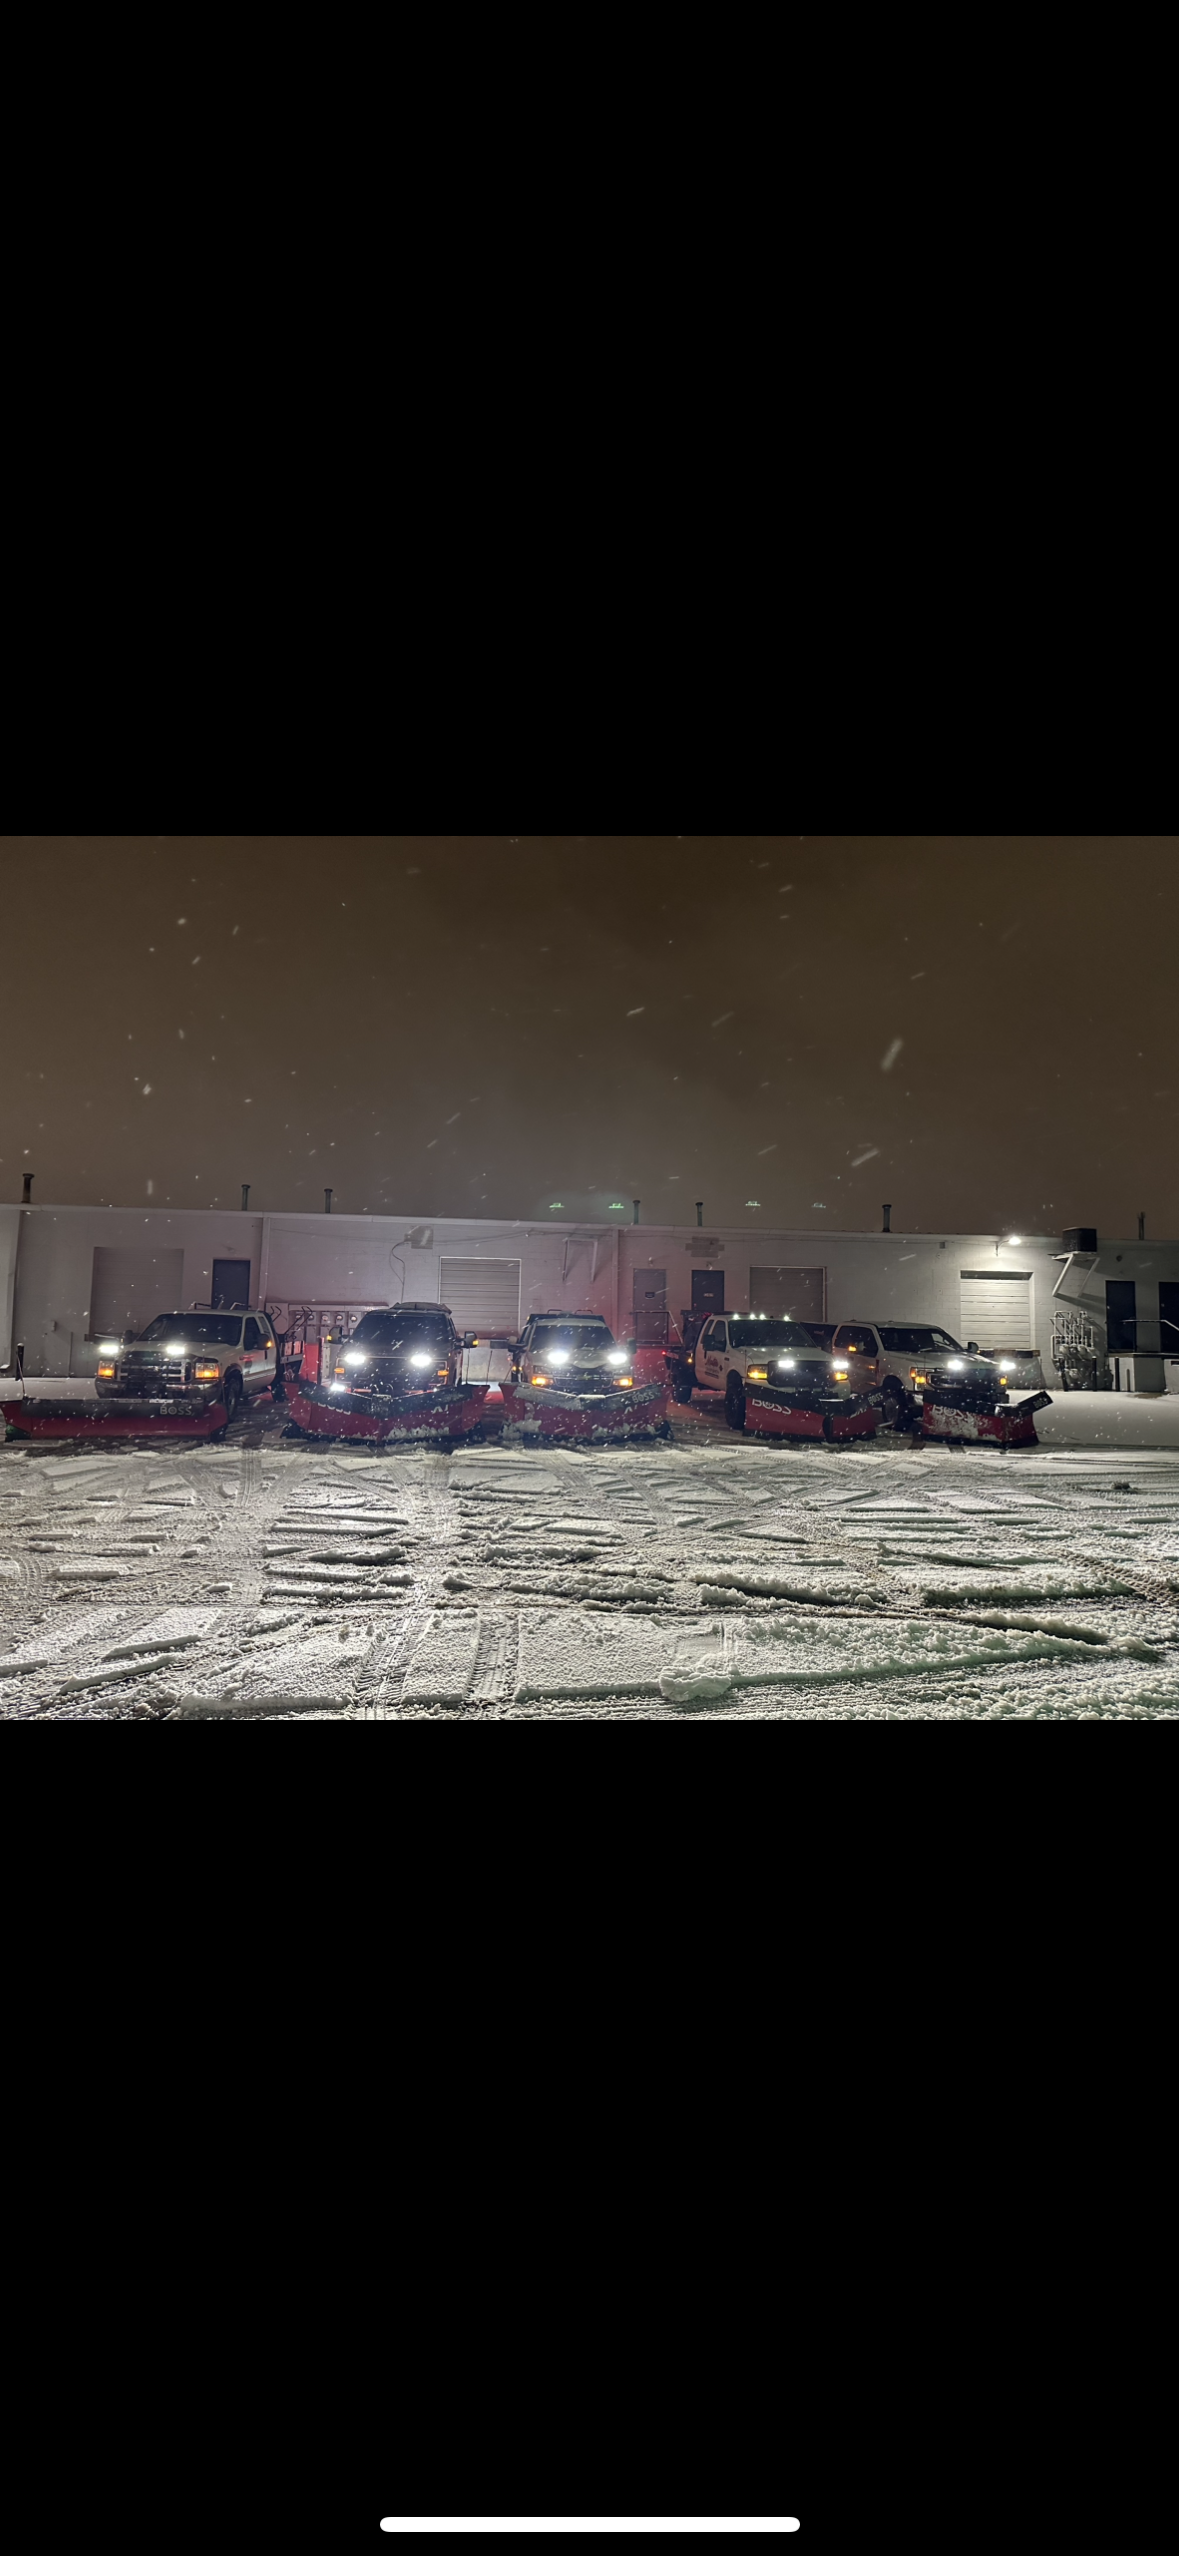 Truck shoveling snow